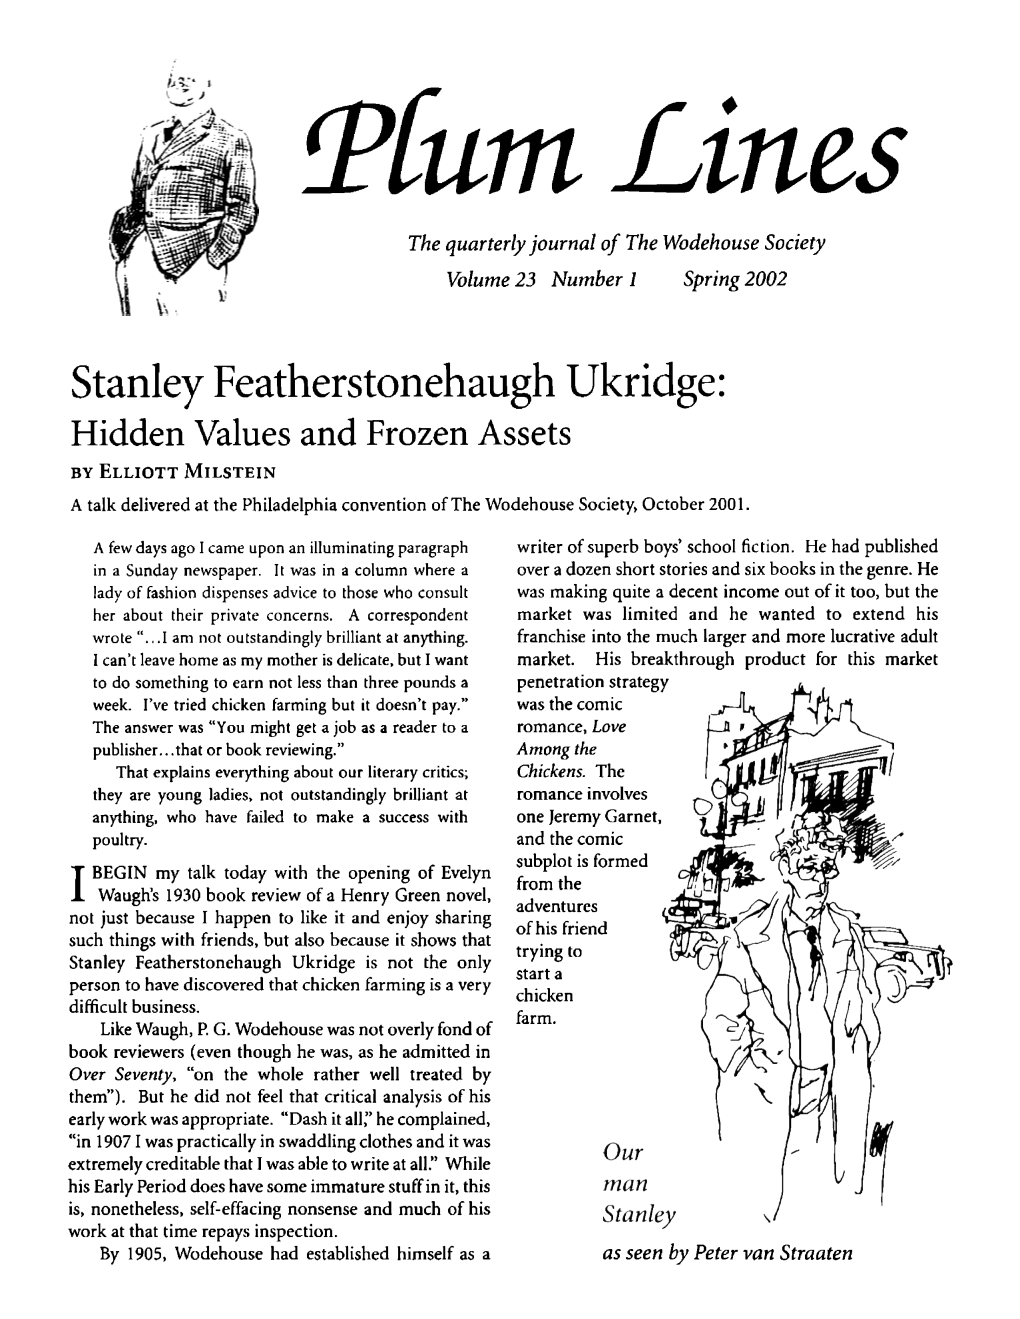 Stanley Featherstonehaugh Ukridge